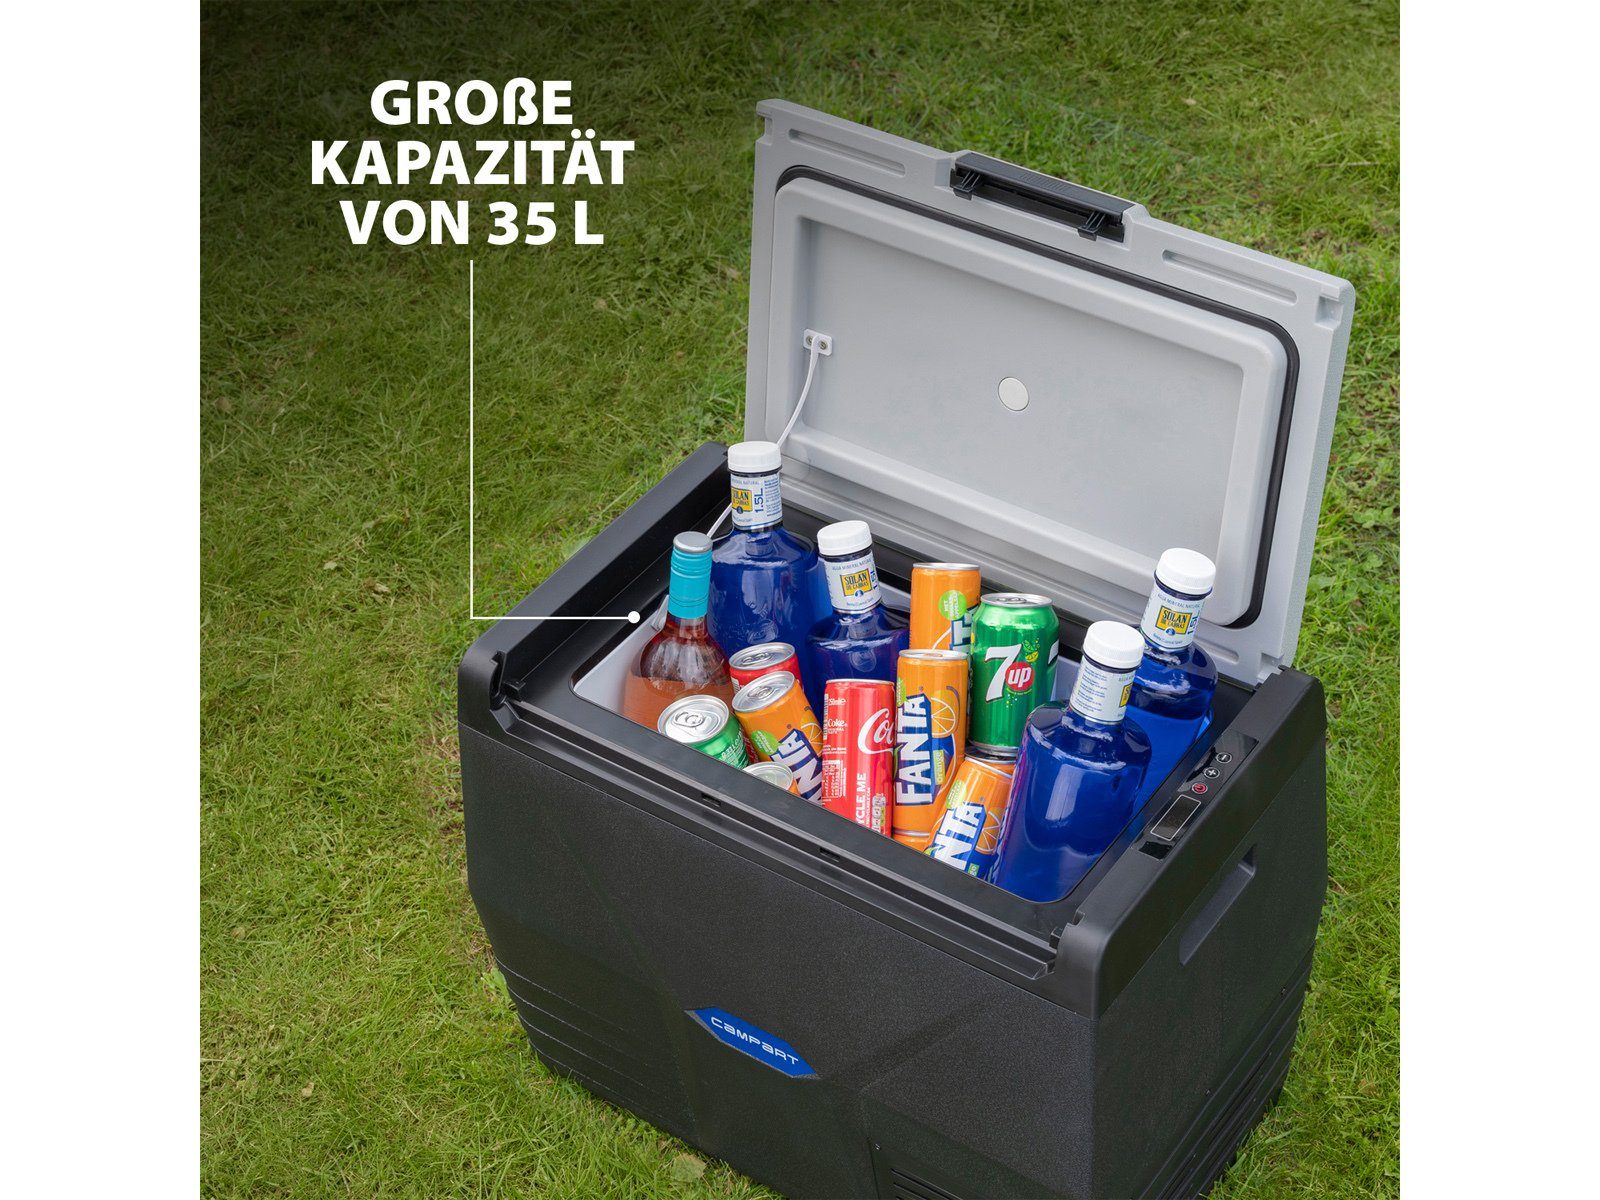 KESSER® Kompressor Kühlbox elektrisch Gefrierbox 42-52L